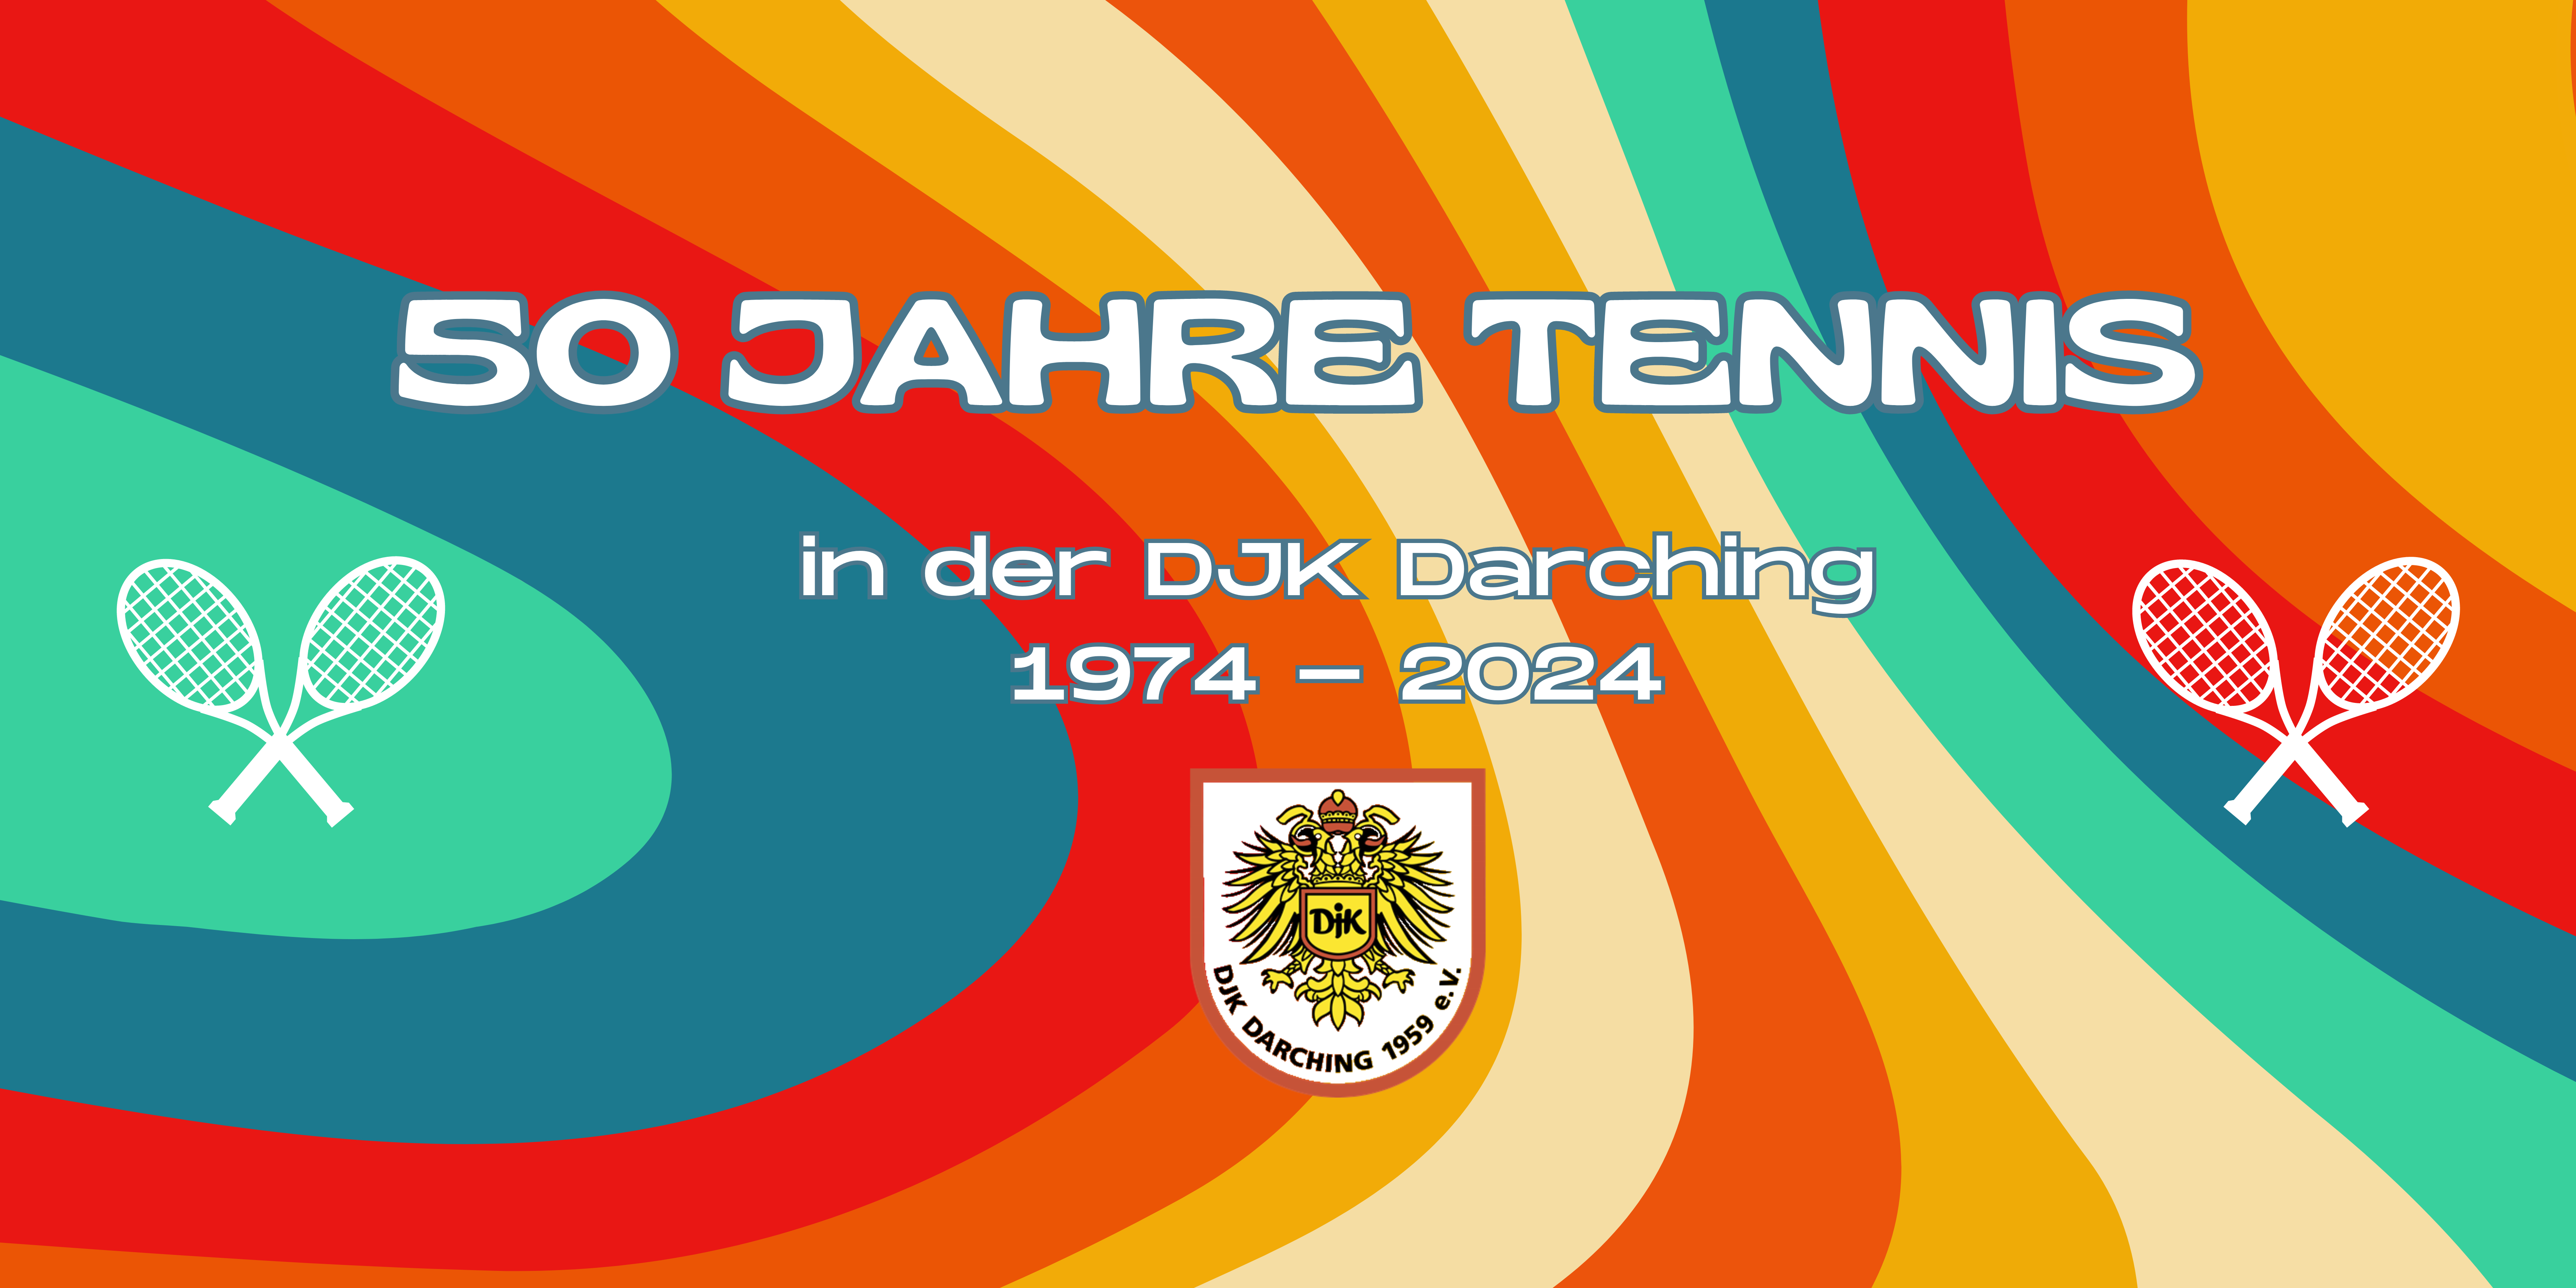 50 Jahre Sparte Tennis